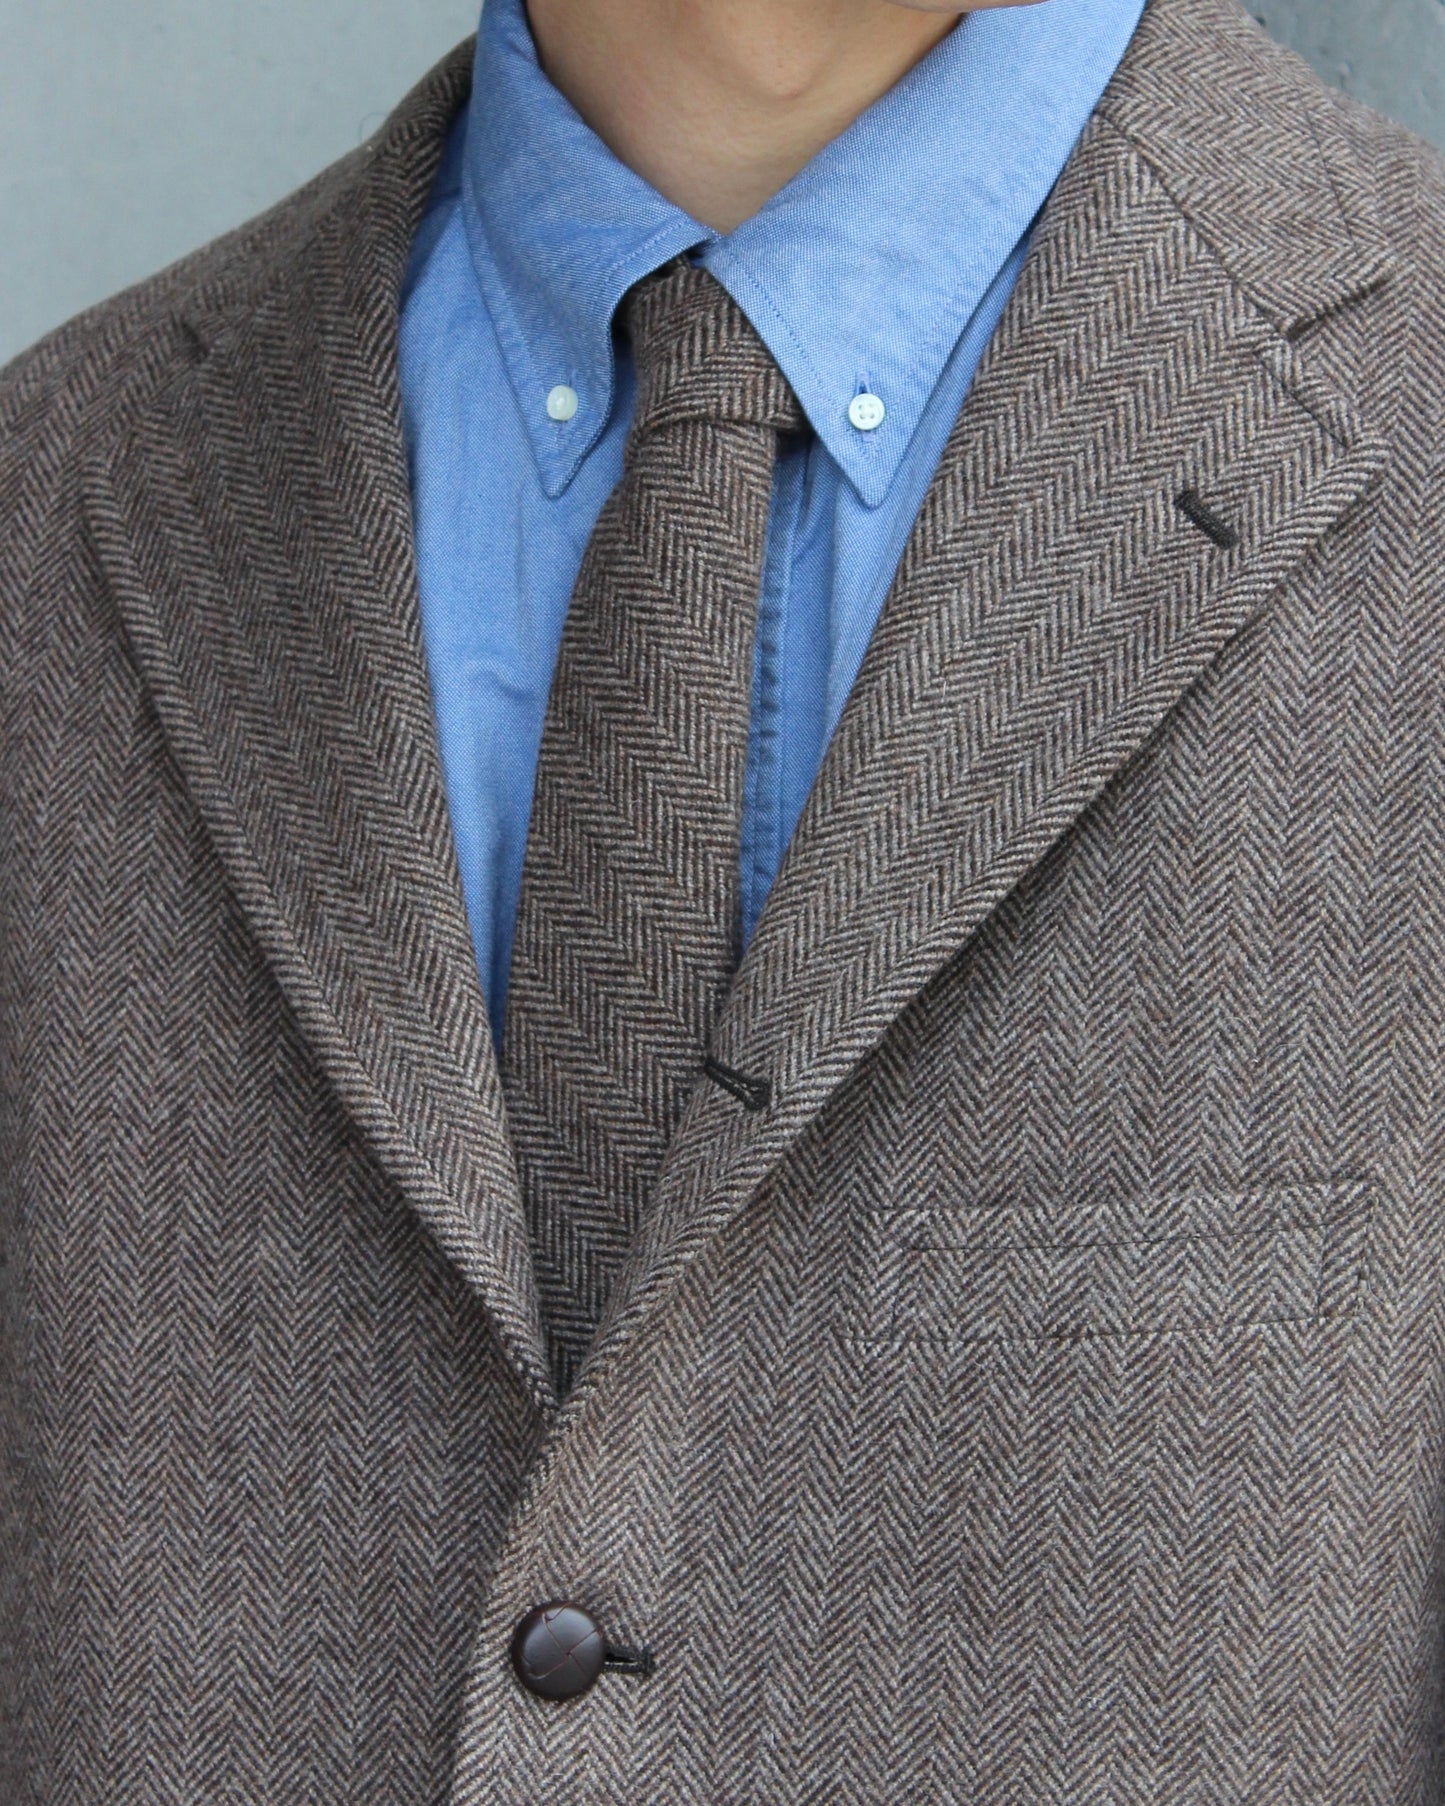 Unlikely Tie Wool Tweed